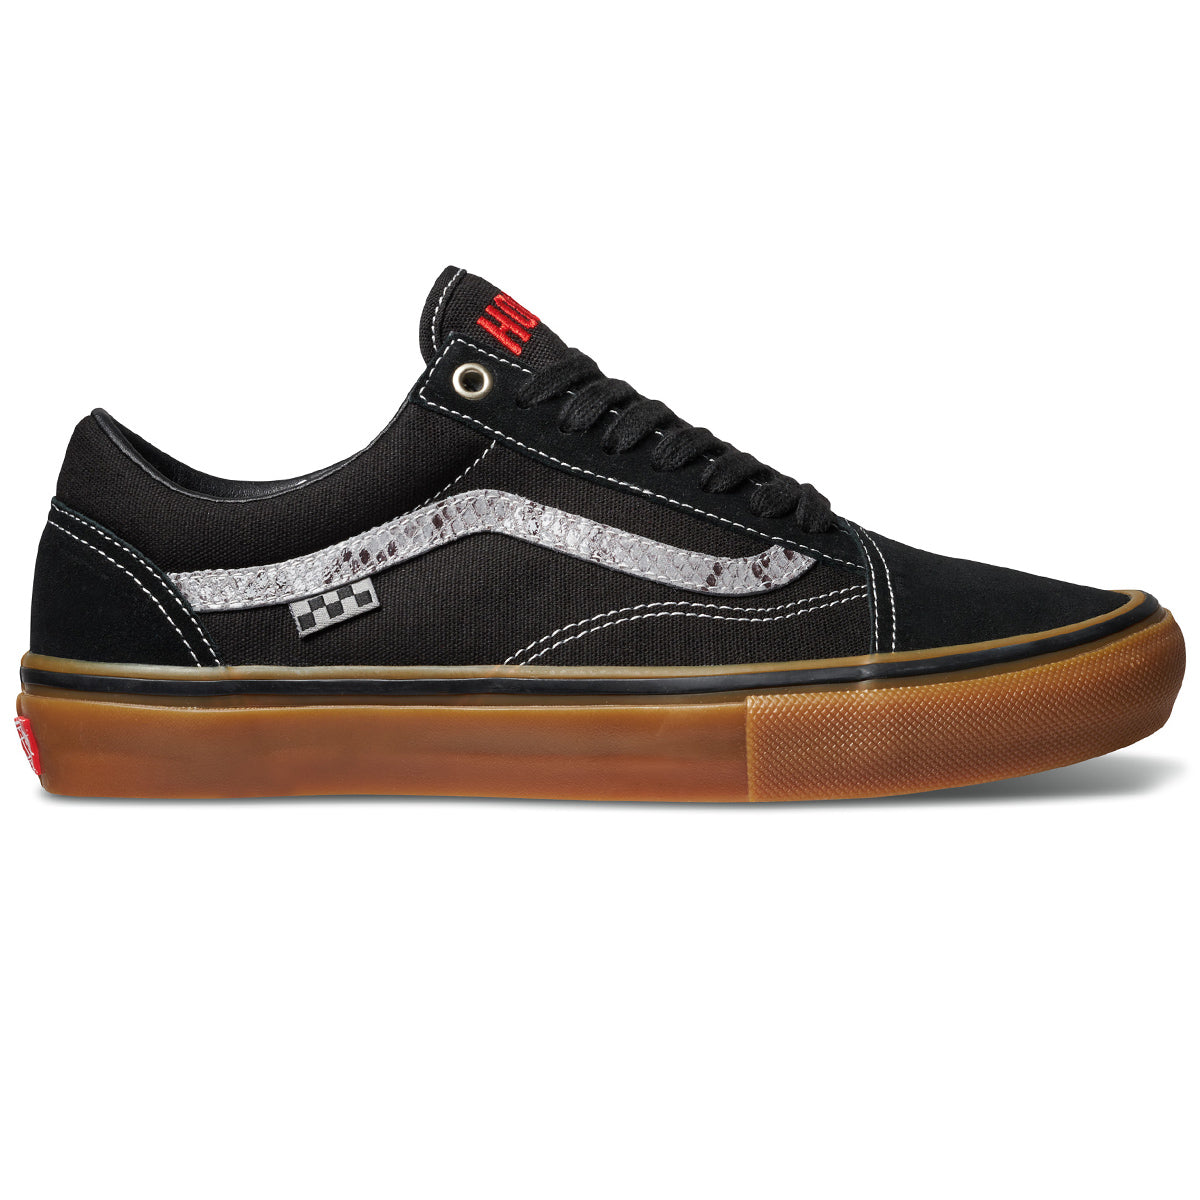 Vans x Hockey Skate Old Skool Shoes - Black/Snake image 1